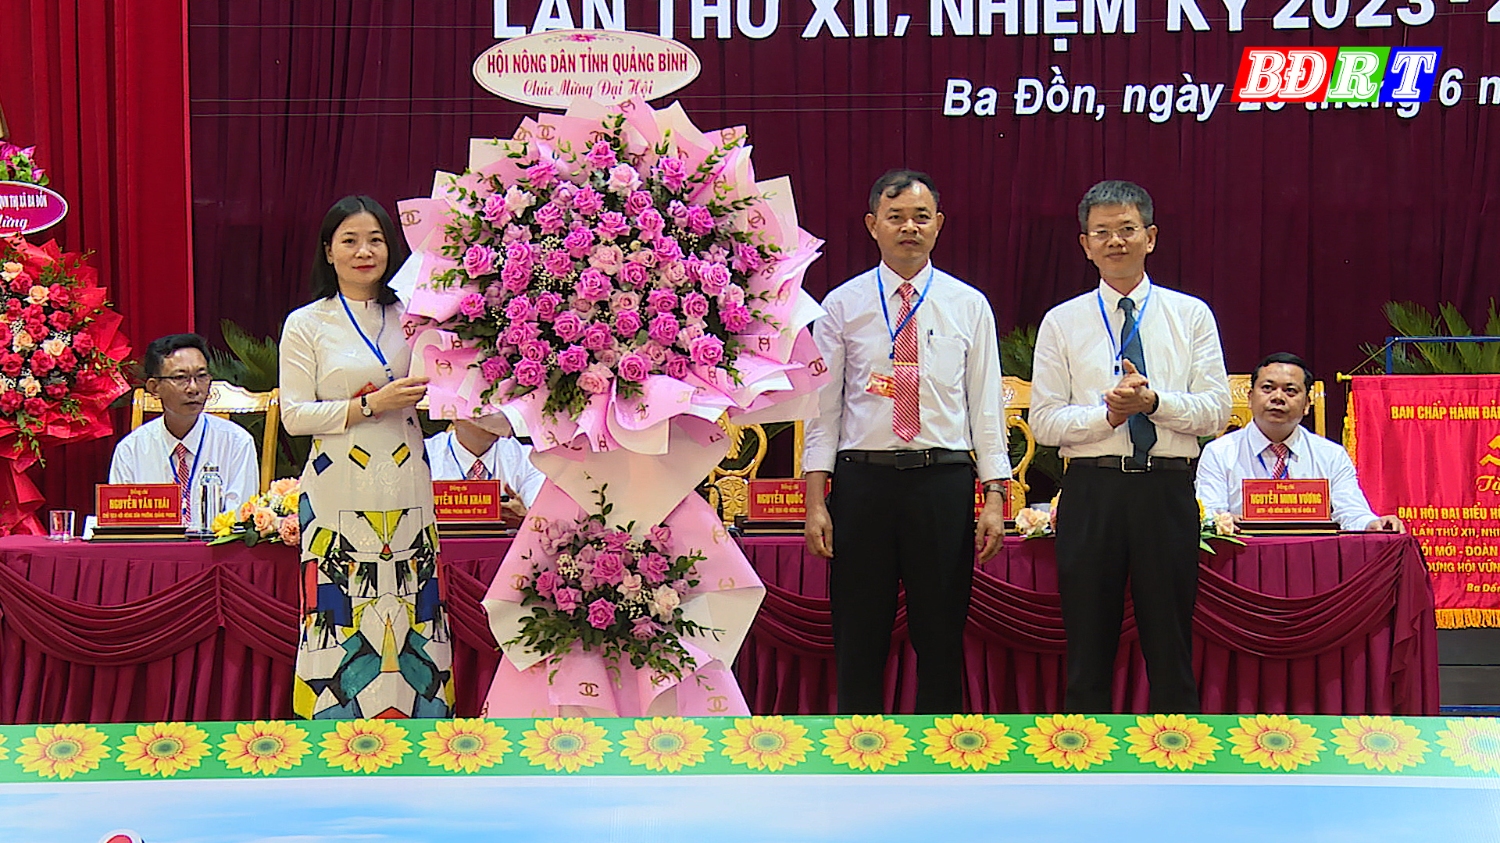 Đồng chí Trần Tiến Sỹ Tỉnh ủy viên Bí thư Đảng Đoàn, Chủ tịch HND tỉnh Quảng Bình đã tặng hoa chúc mừng đại hội